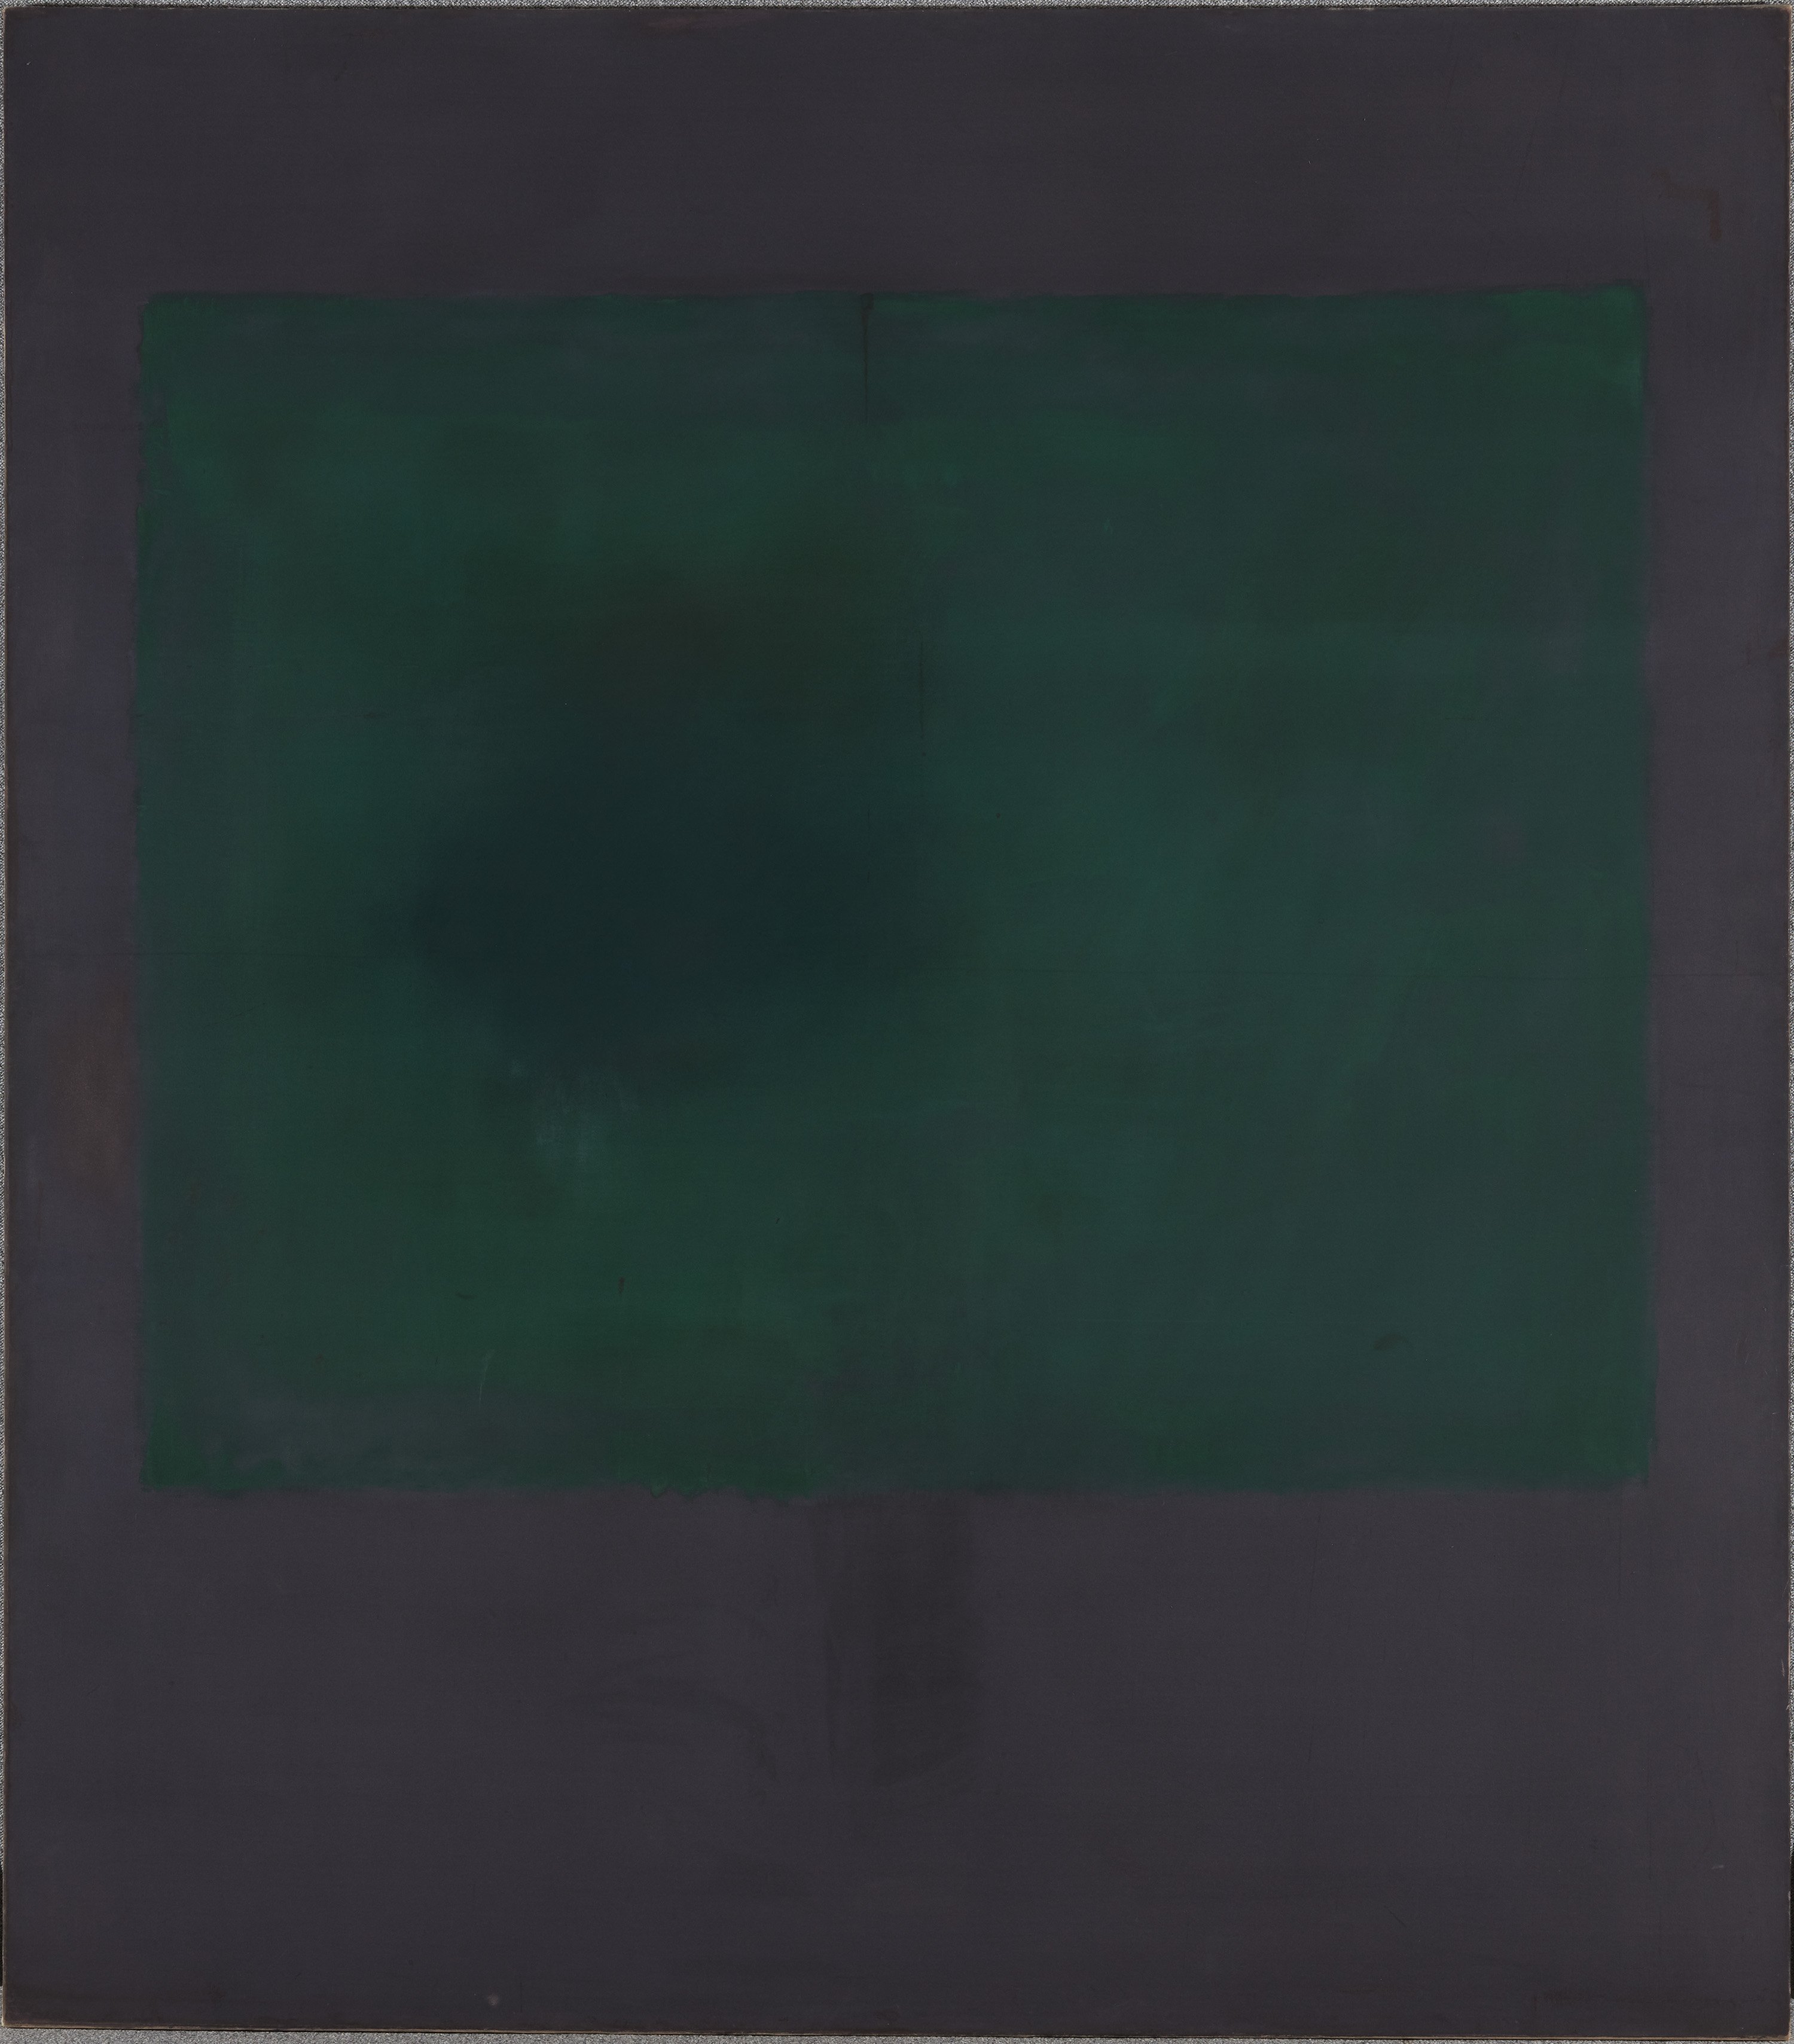 Sin título (Verde sobre morado). Mark Rothko